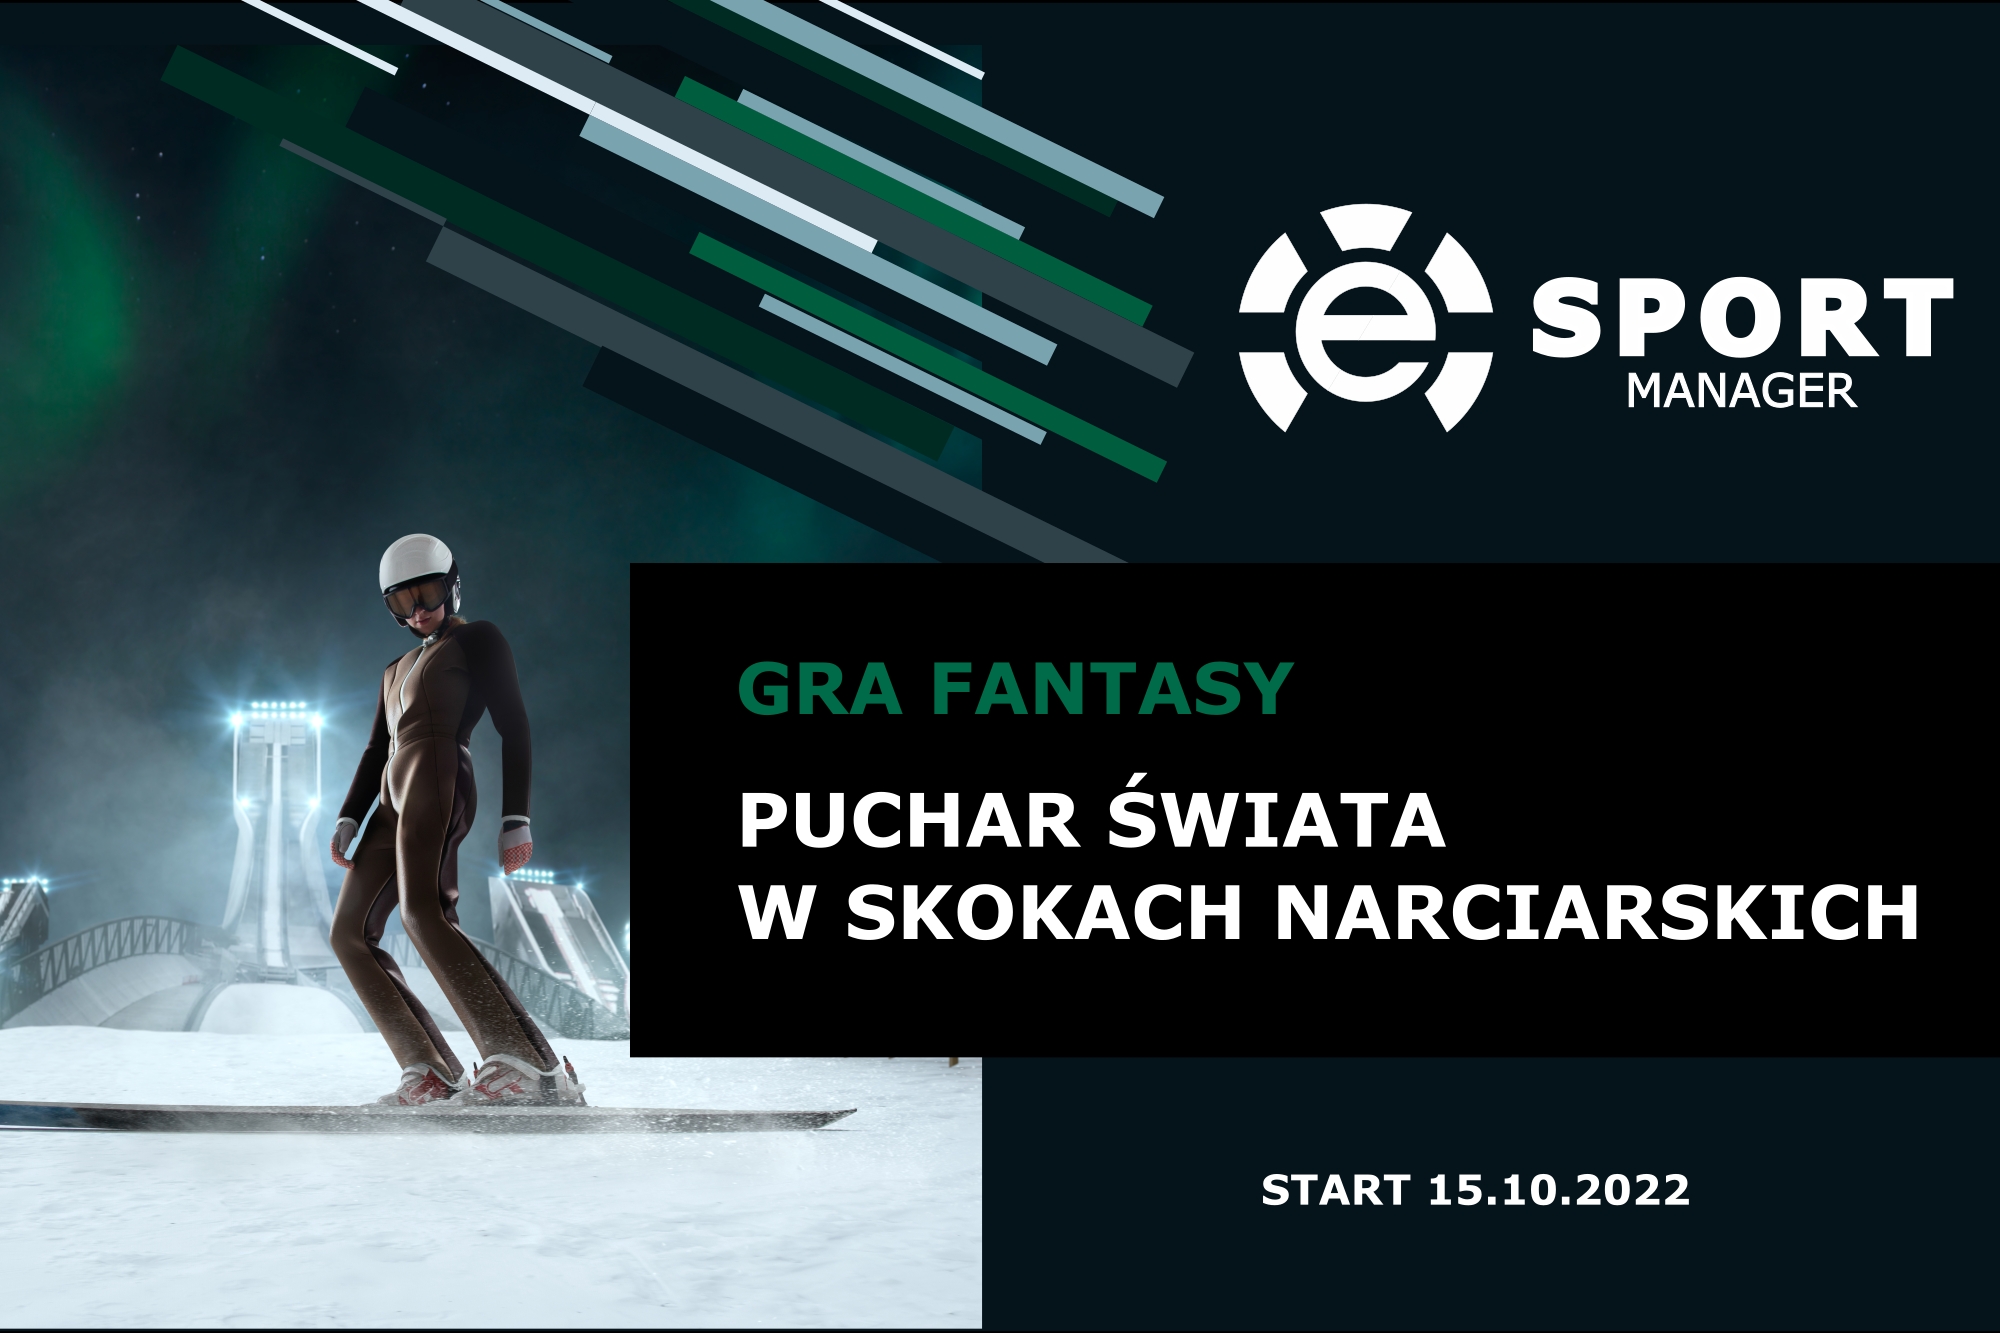 You are currently viewing Zostań menedżerem w skokach narciarskich. Rusza Puchar Świata Fantasy 2022/2023!